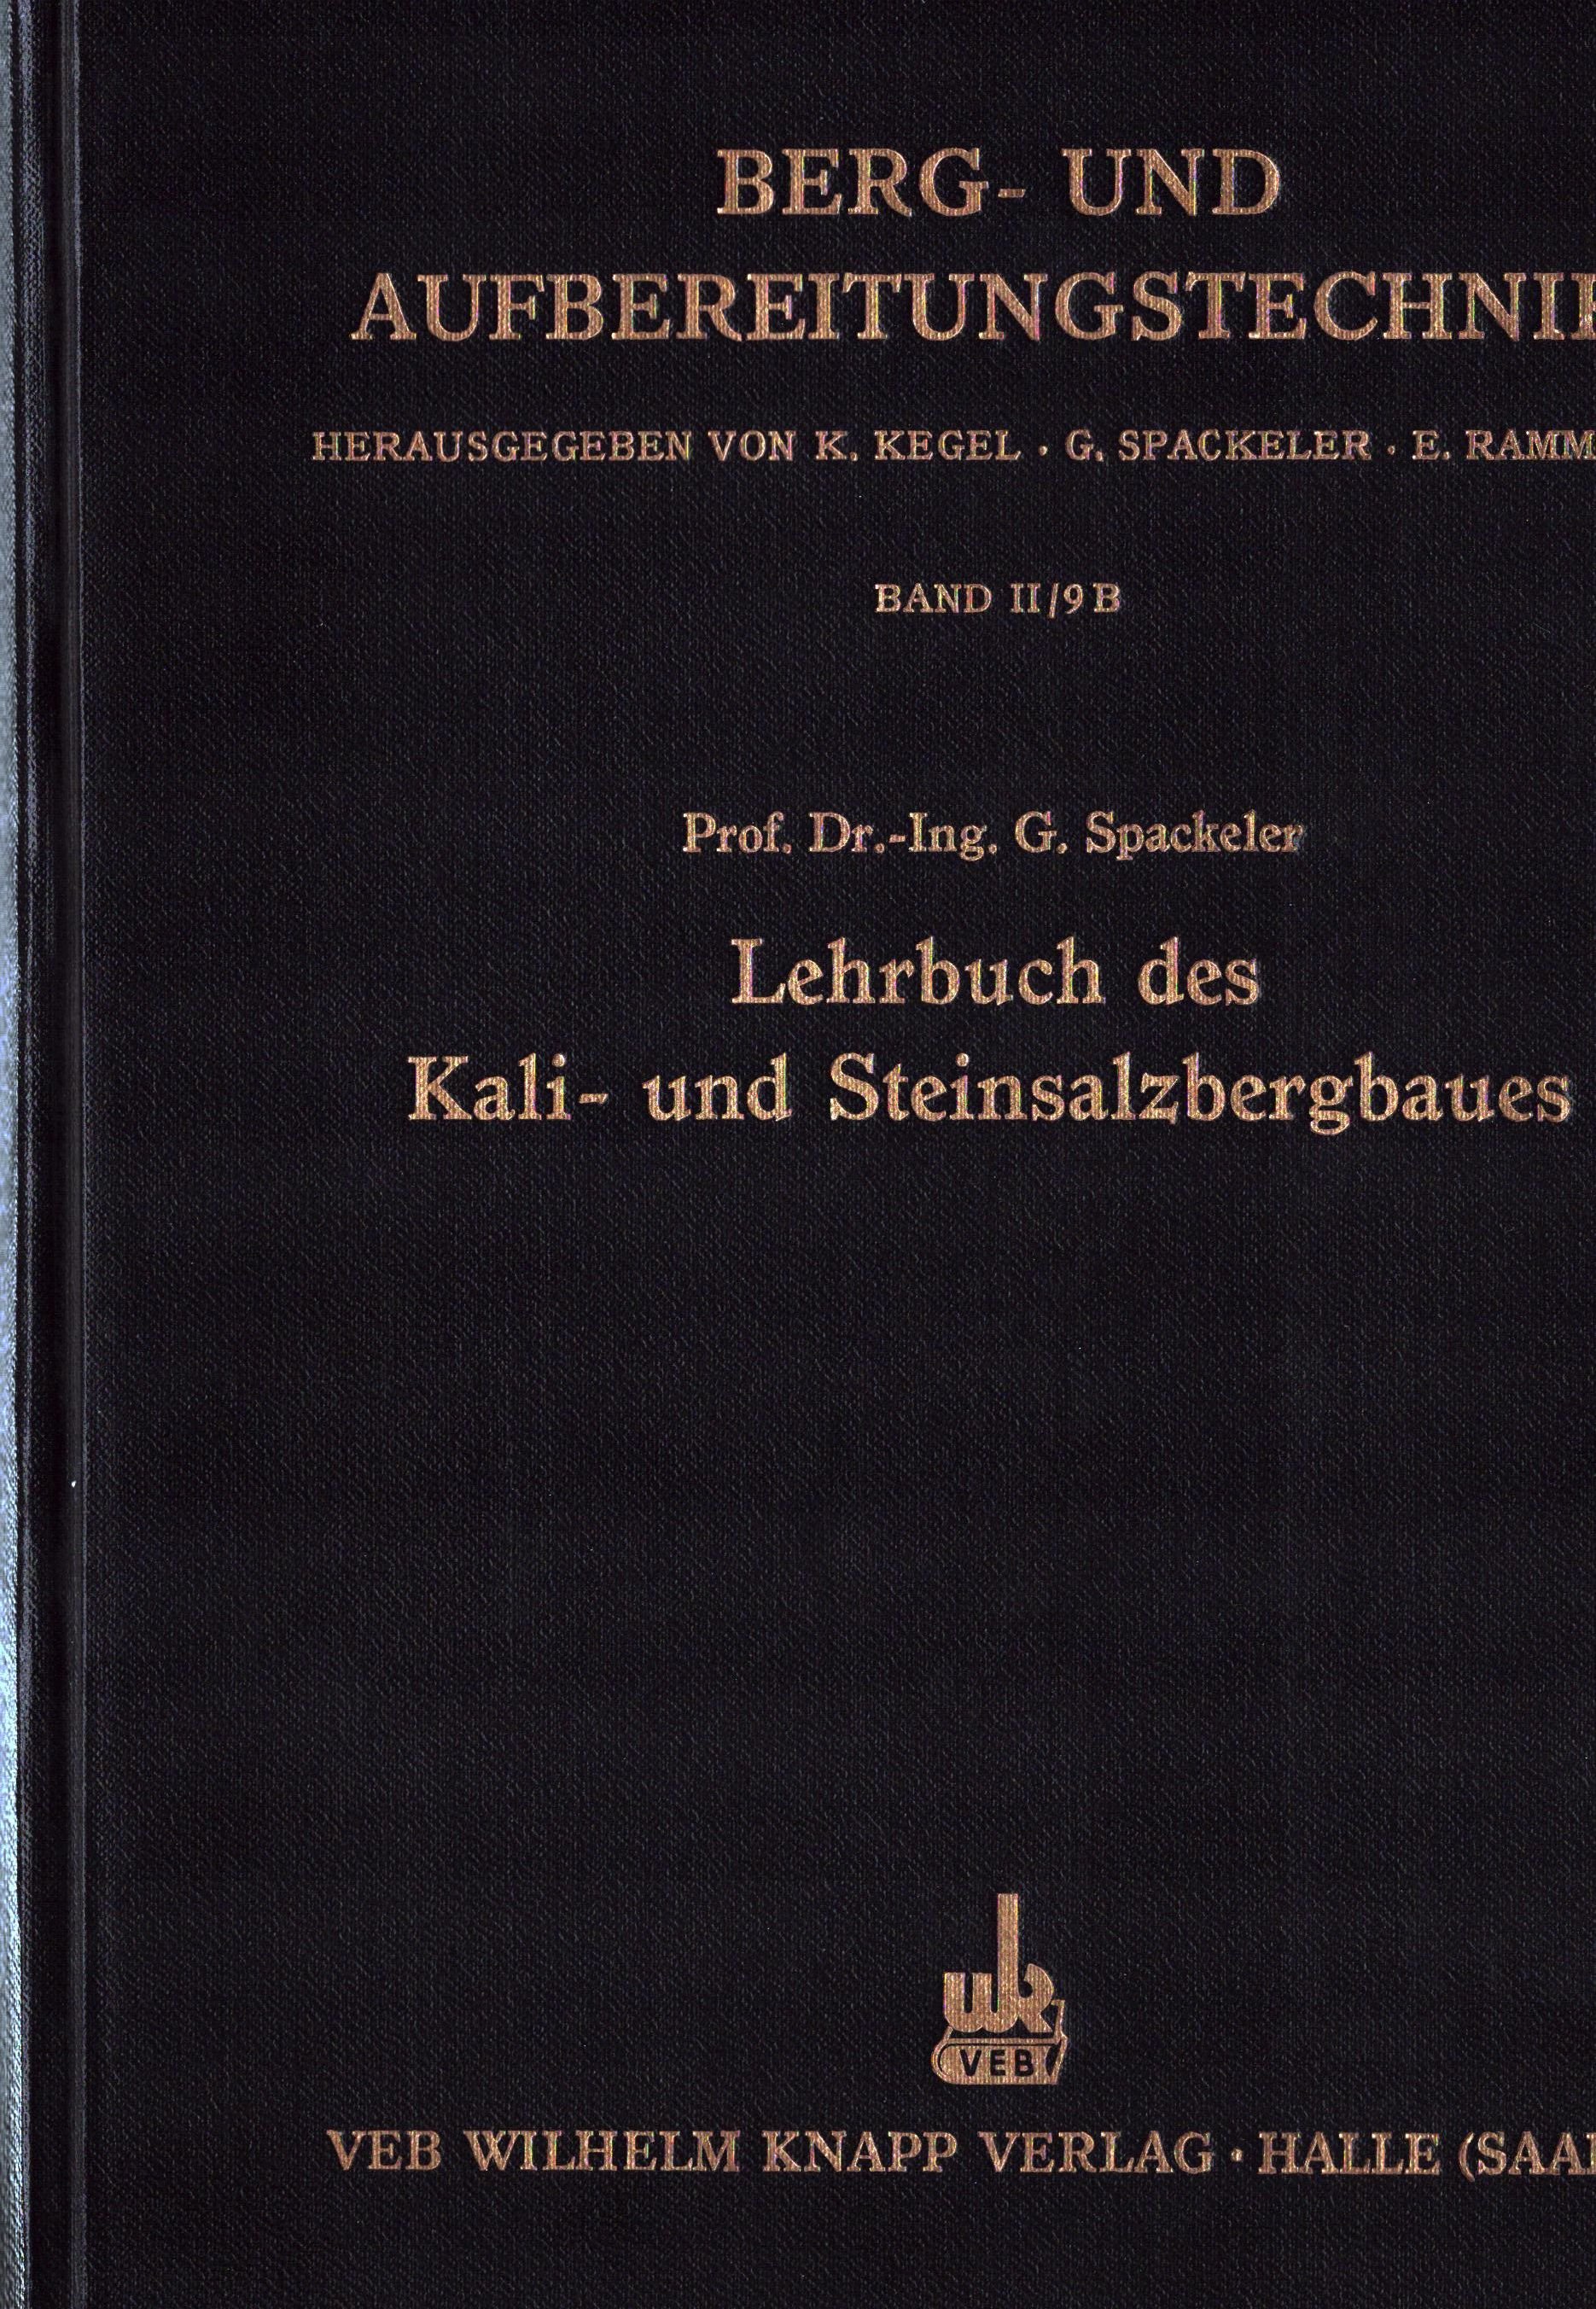 Berg- und Aufbereitungstechnik - Lehrbuch des Kali- und Steinsalzbergbaues (Archiv SAXONIA-FREIBERG-STIFTUNG CC BY-NC-SA)